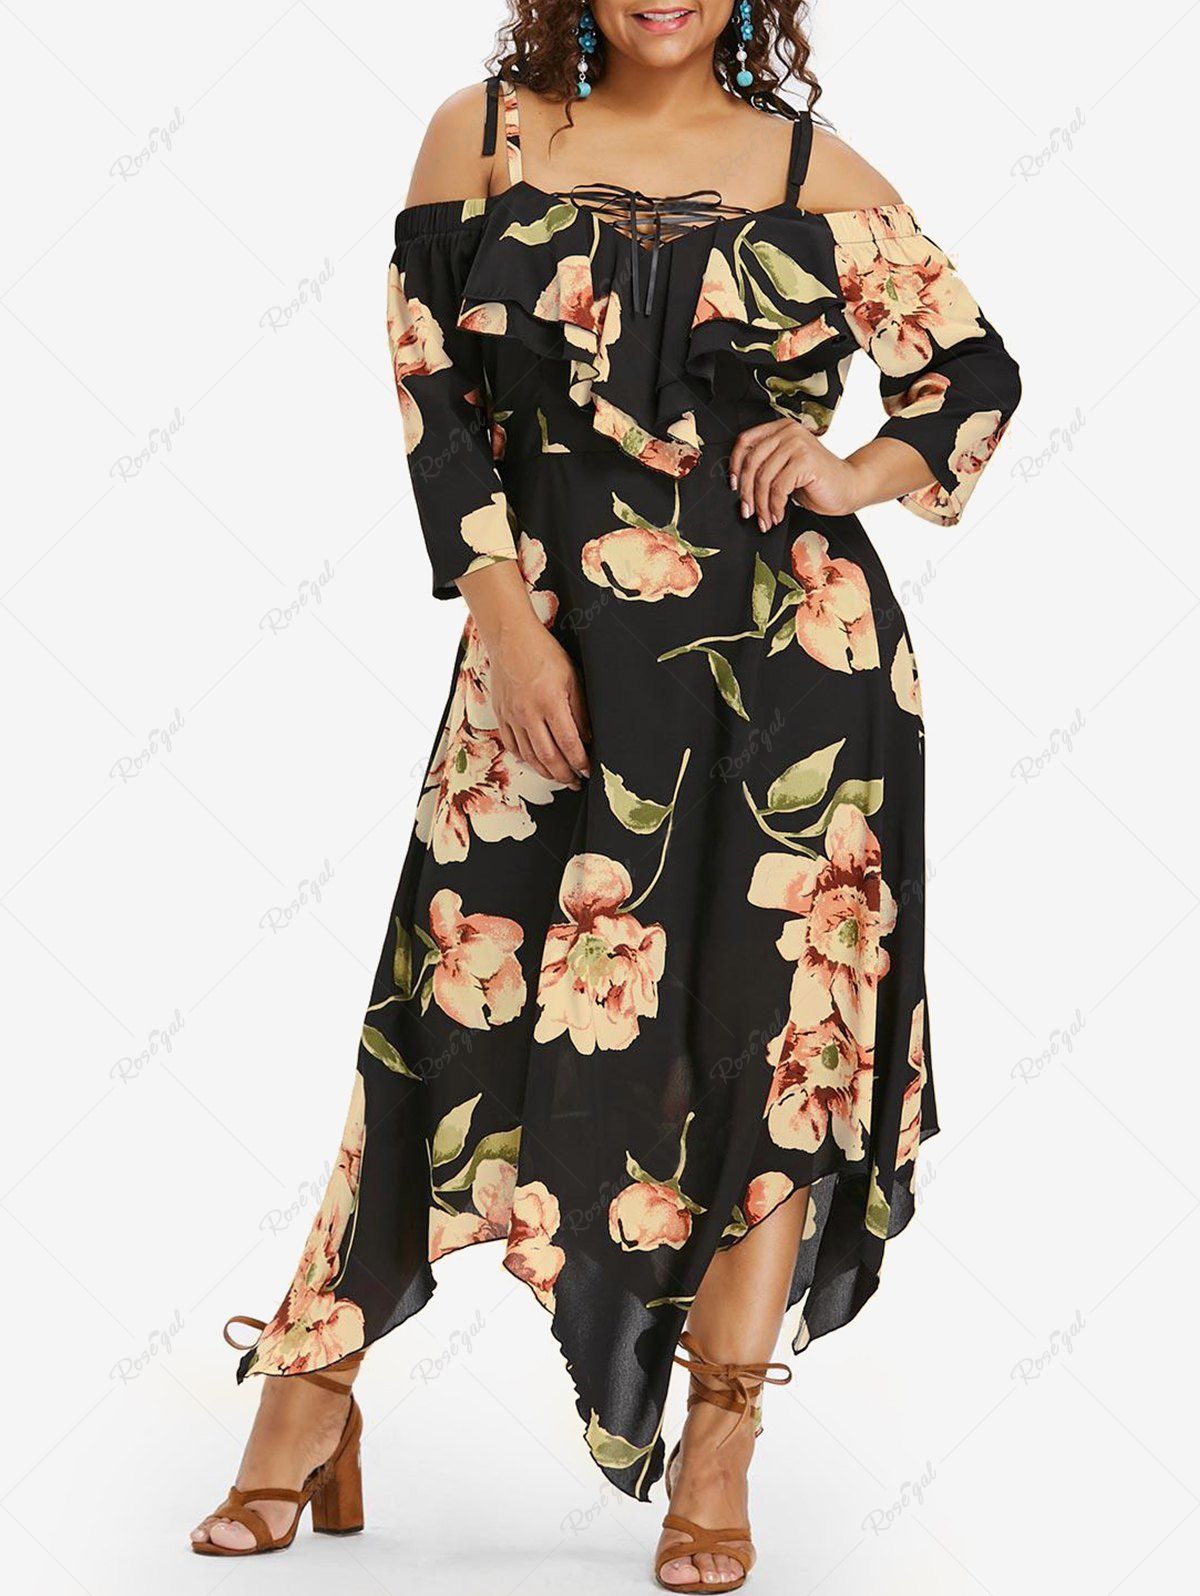 Affordable Plus Size Flower Print Lace Up Cold Shoulder Handkerchief Dress  